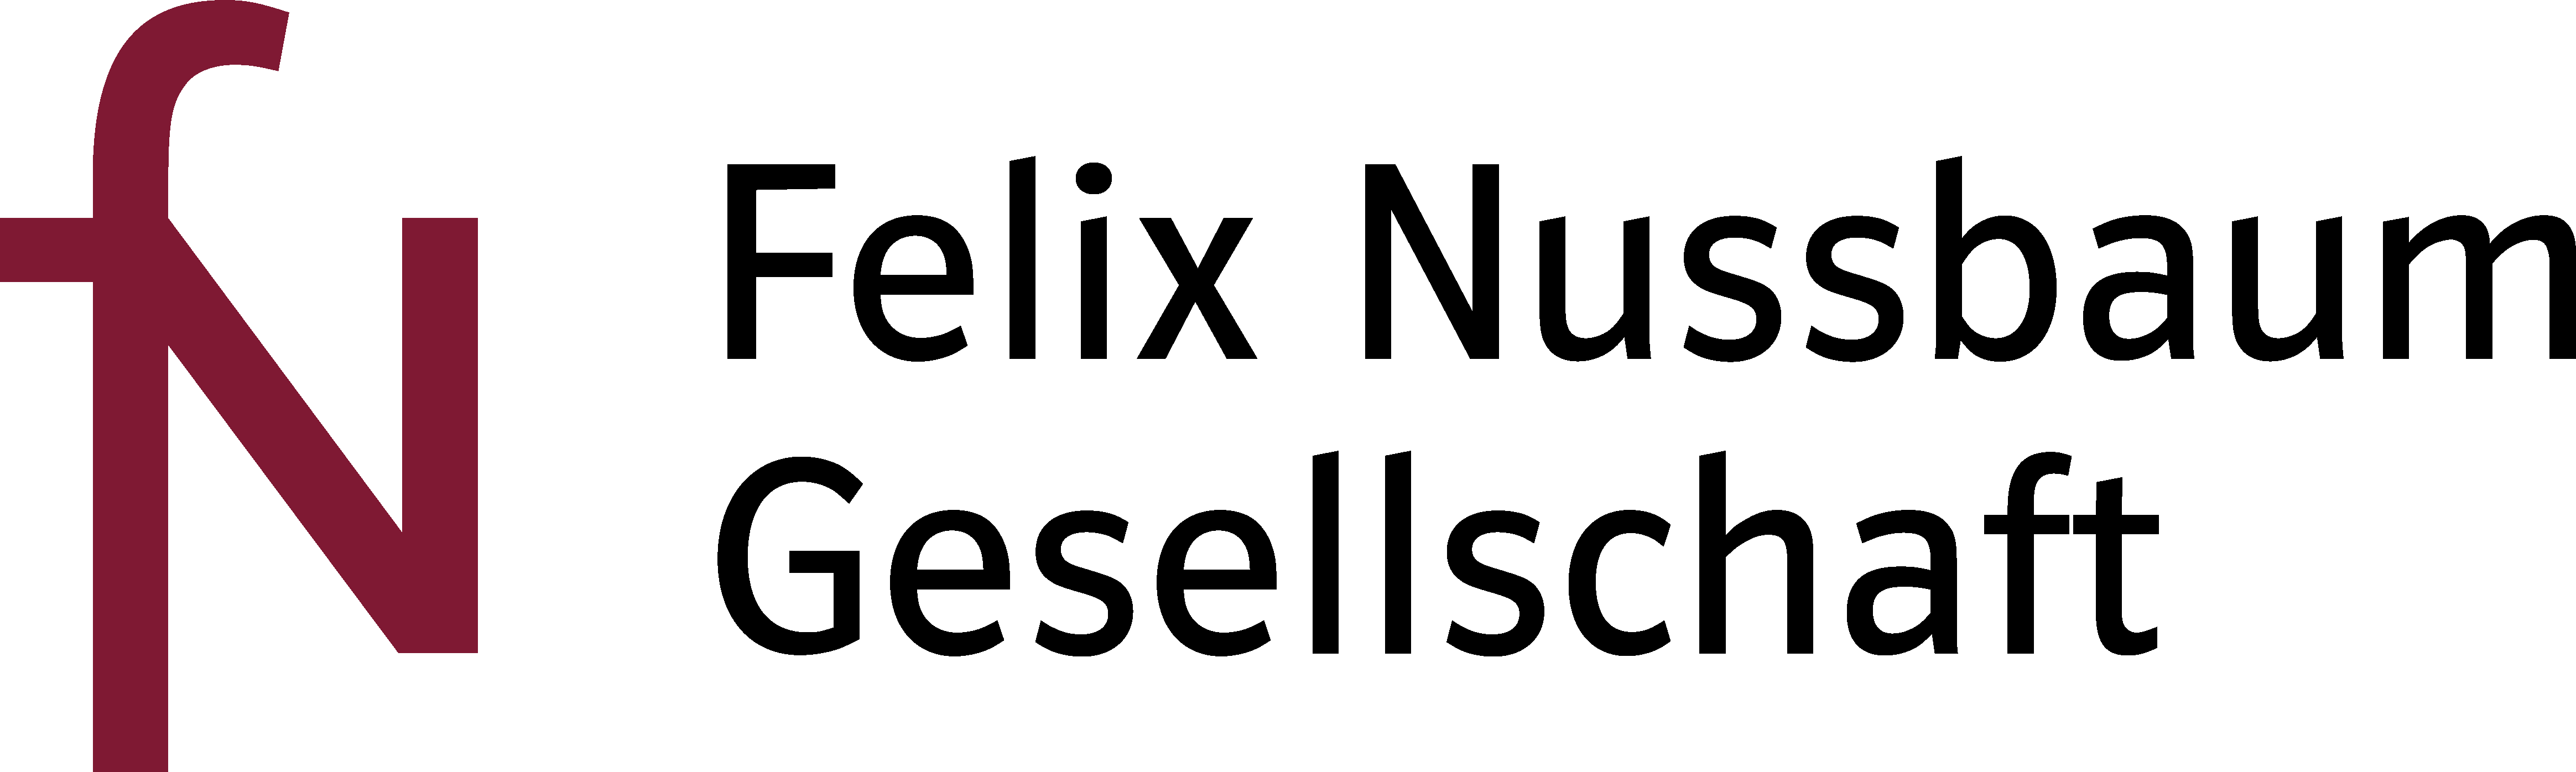 Felix-Nussbaum-Gesellschaft